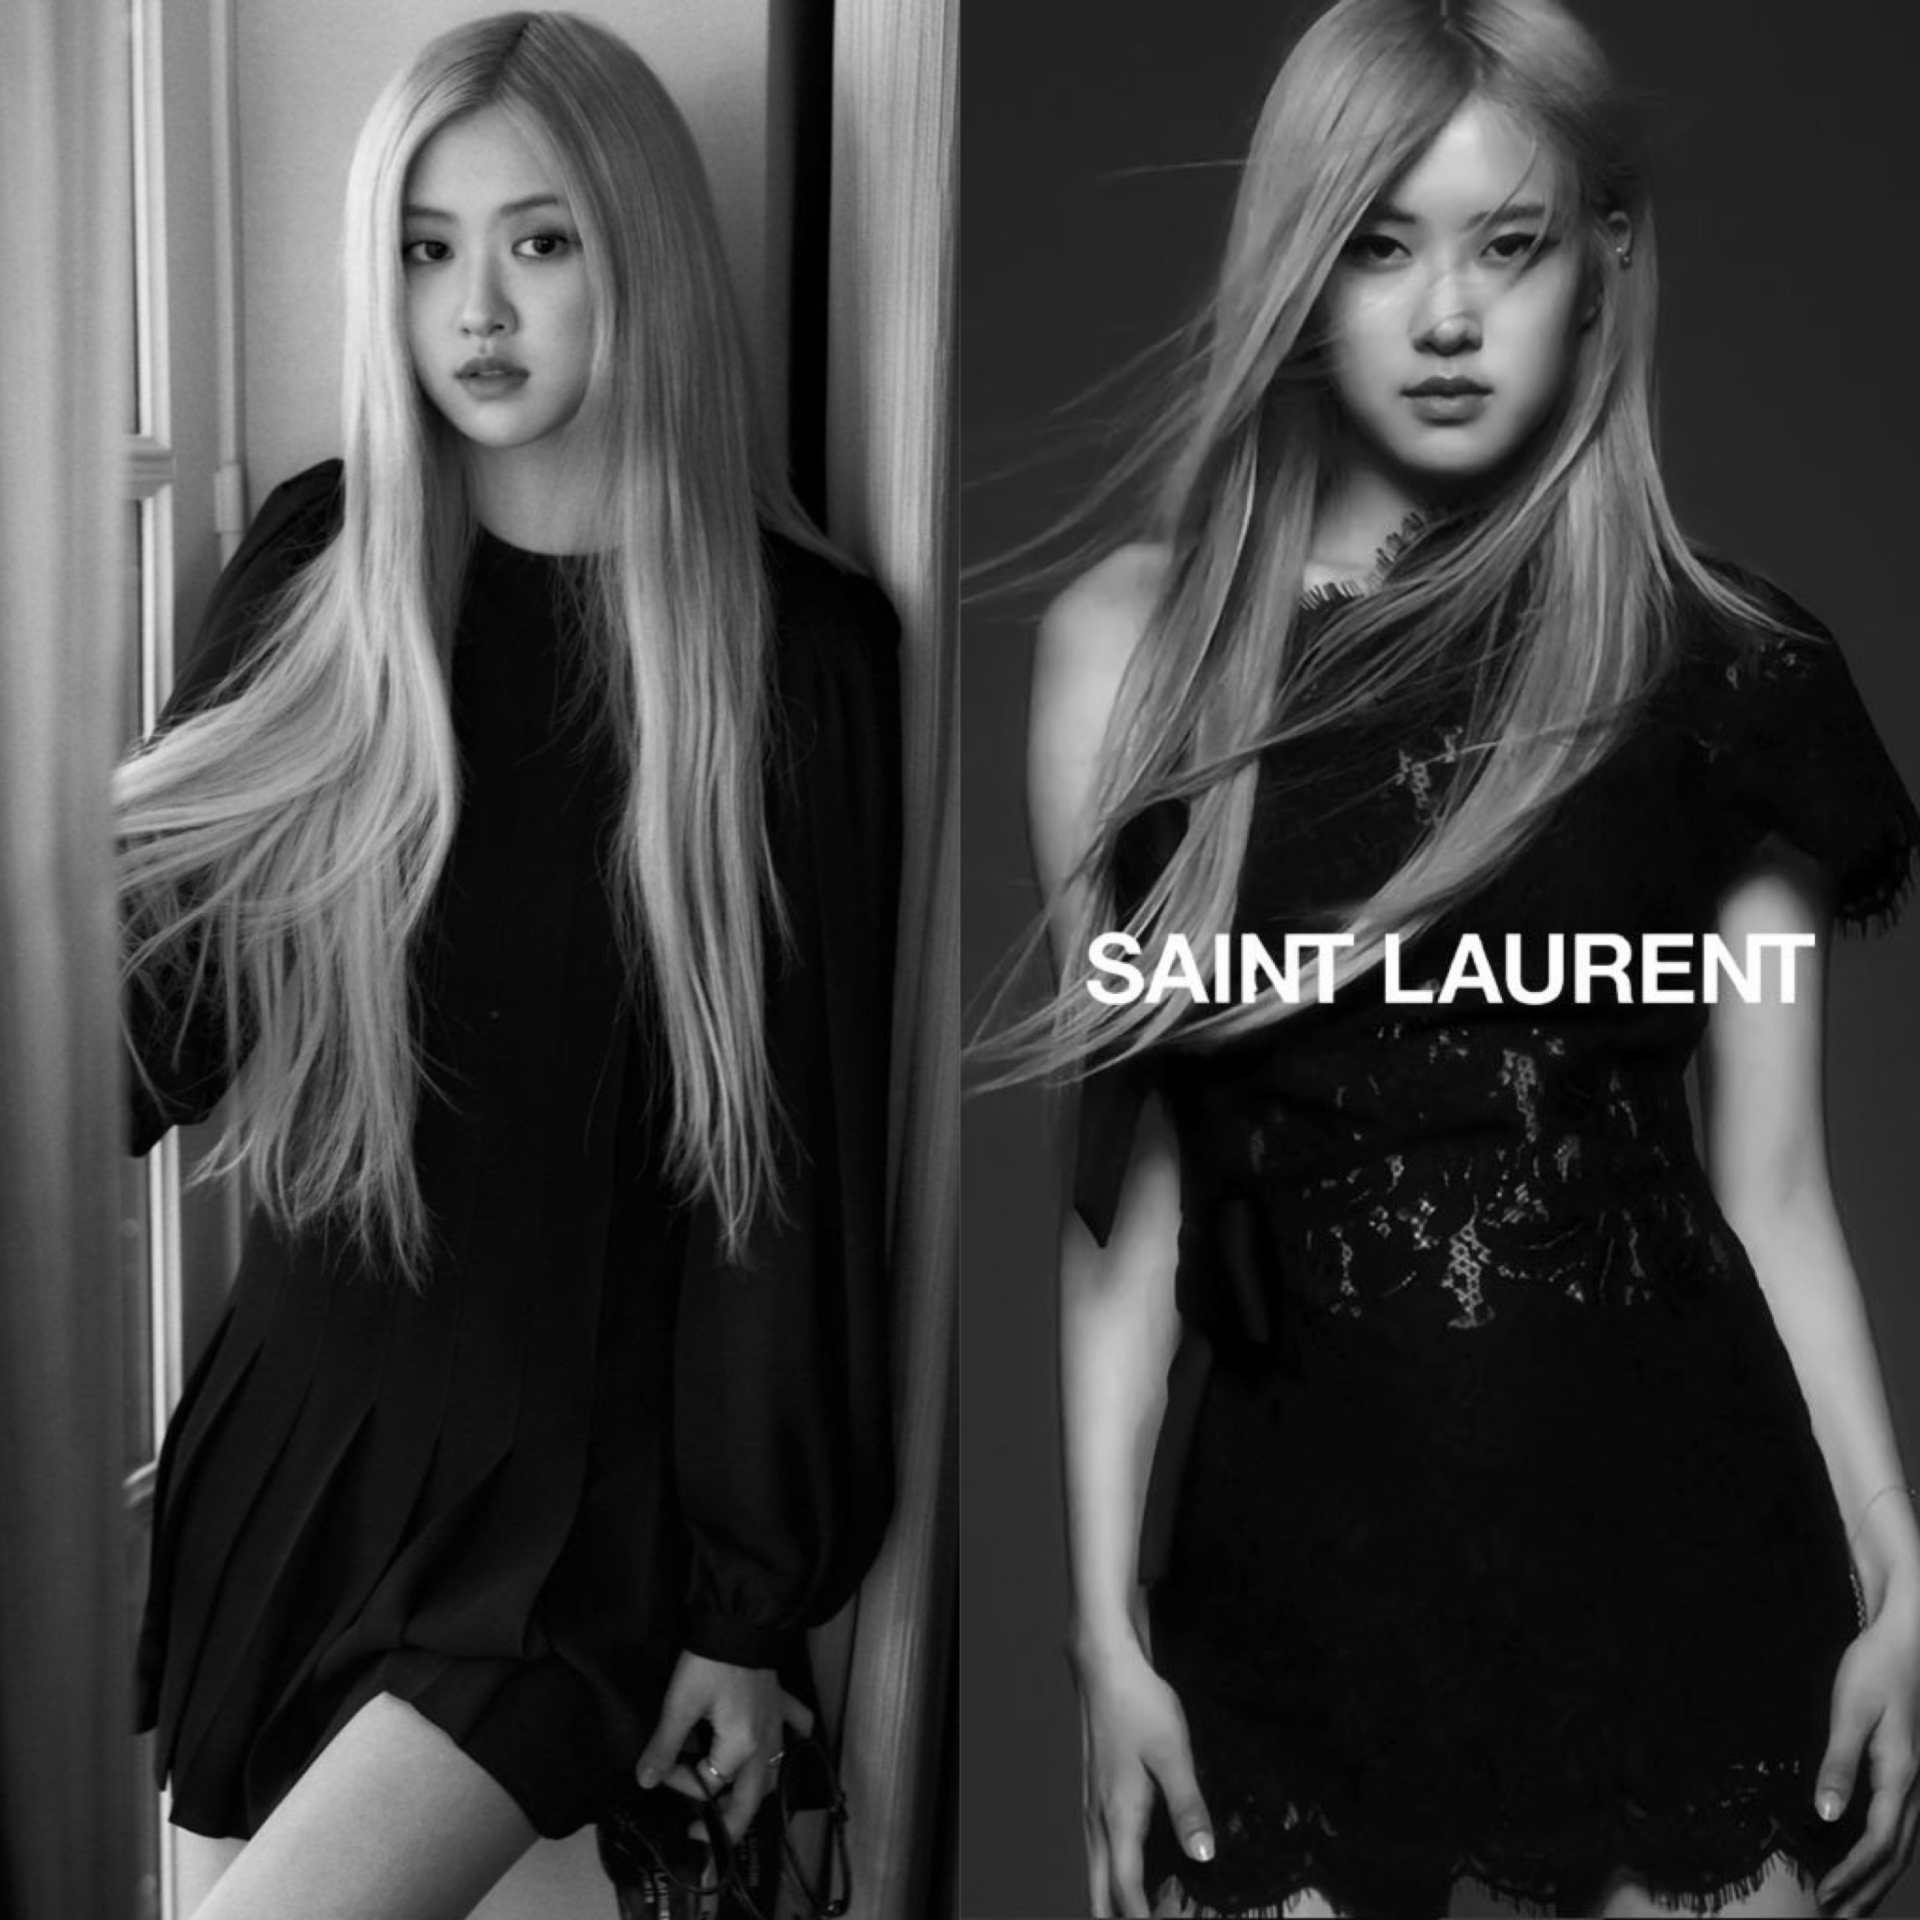 Dẫu biết 'đặc sản' của Saint Laurent là ảnh đen trắng nhưng qua bao nhiêu 'mùa trăng' mà nhà mốt Pháp vẫn chỉ cho Rosé diện tóc bạch kim xoã dài bay trong gió cùng những trang phục màu đen quá an toàn và mờ nhạt đến mức chẳng ai nhìn rõ cô nàng mặc cái gì.